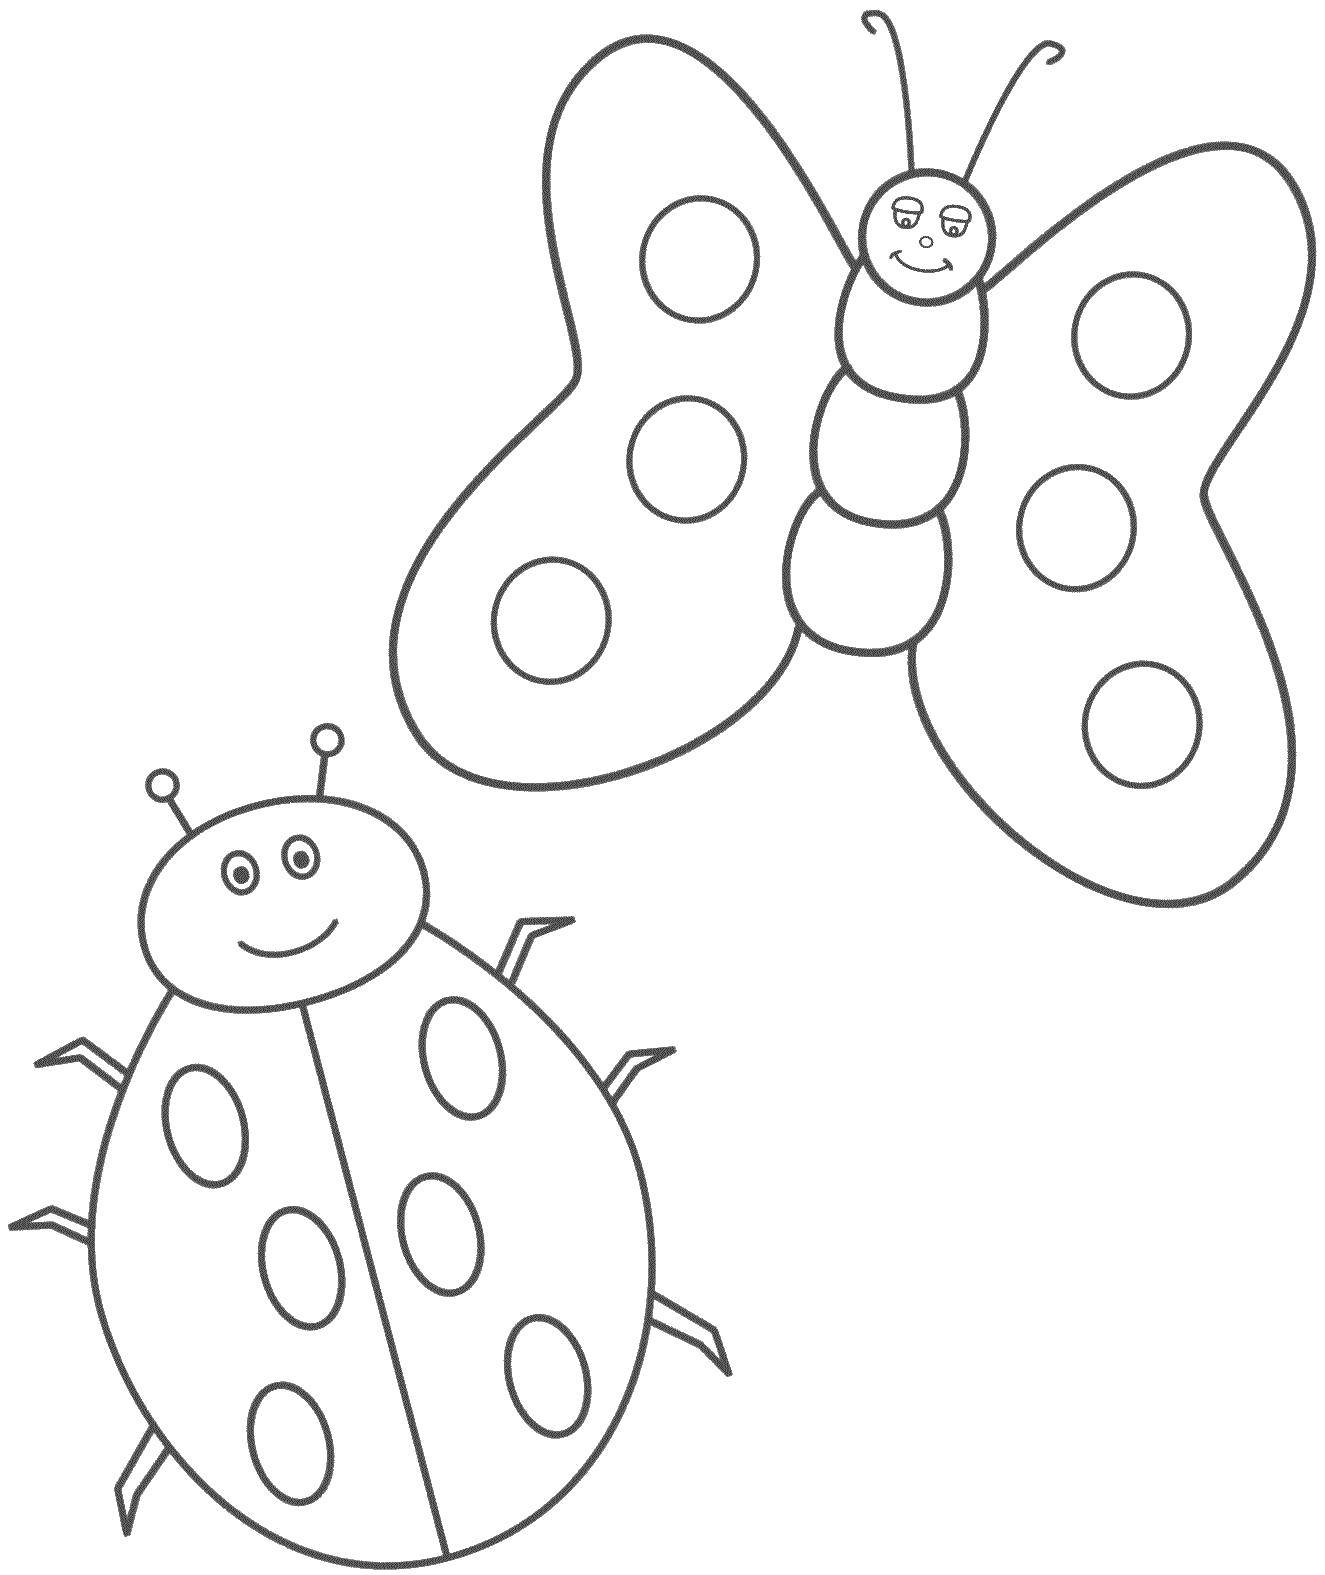 Раскрашивание средняя группа. Насекомые. Раскраска. Бабочка раскраска для детей. Раскраска насекомые для малышей. Трафарет насекомые для детей.